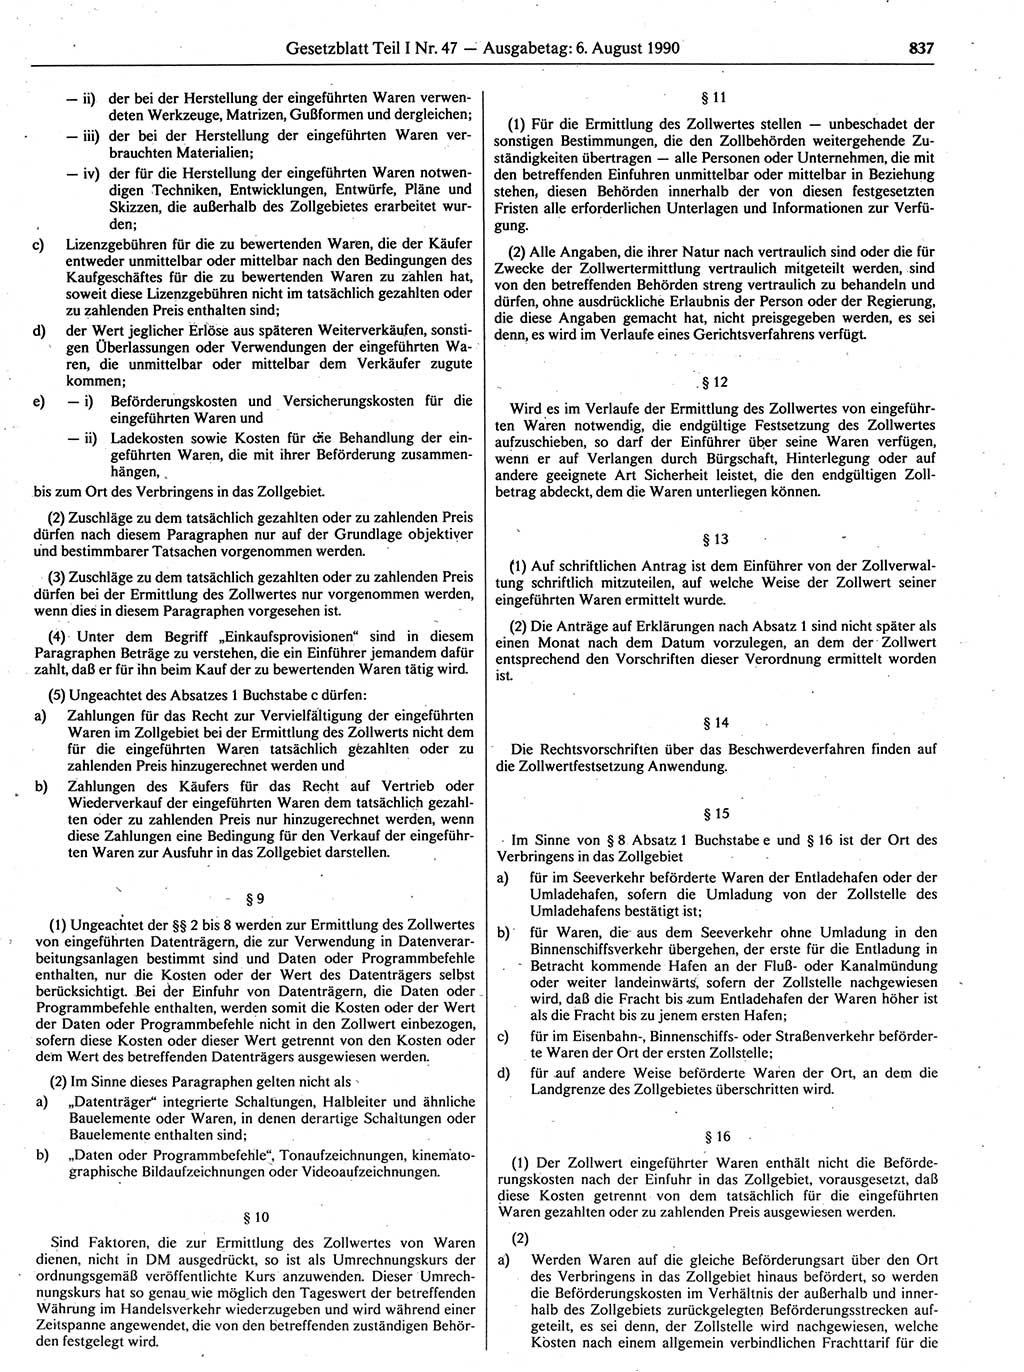 Gesetzblatt (GBl.) der Deutschen Demokratischen Republik (DDR) Teil Ⅰ 1990, Seite 837 (GBl. DDR Ⅰ 1990, S. 837)